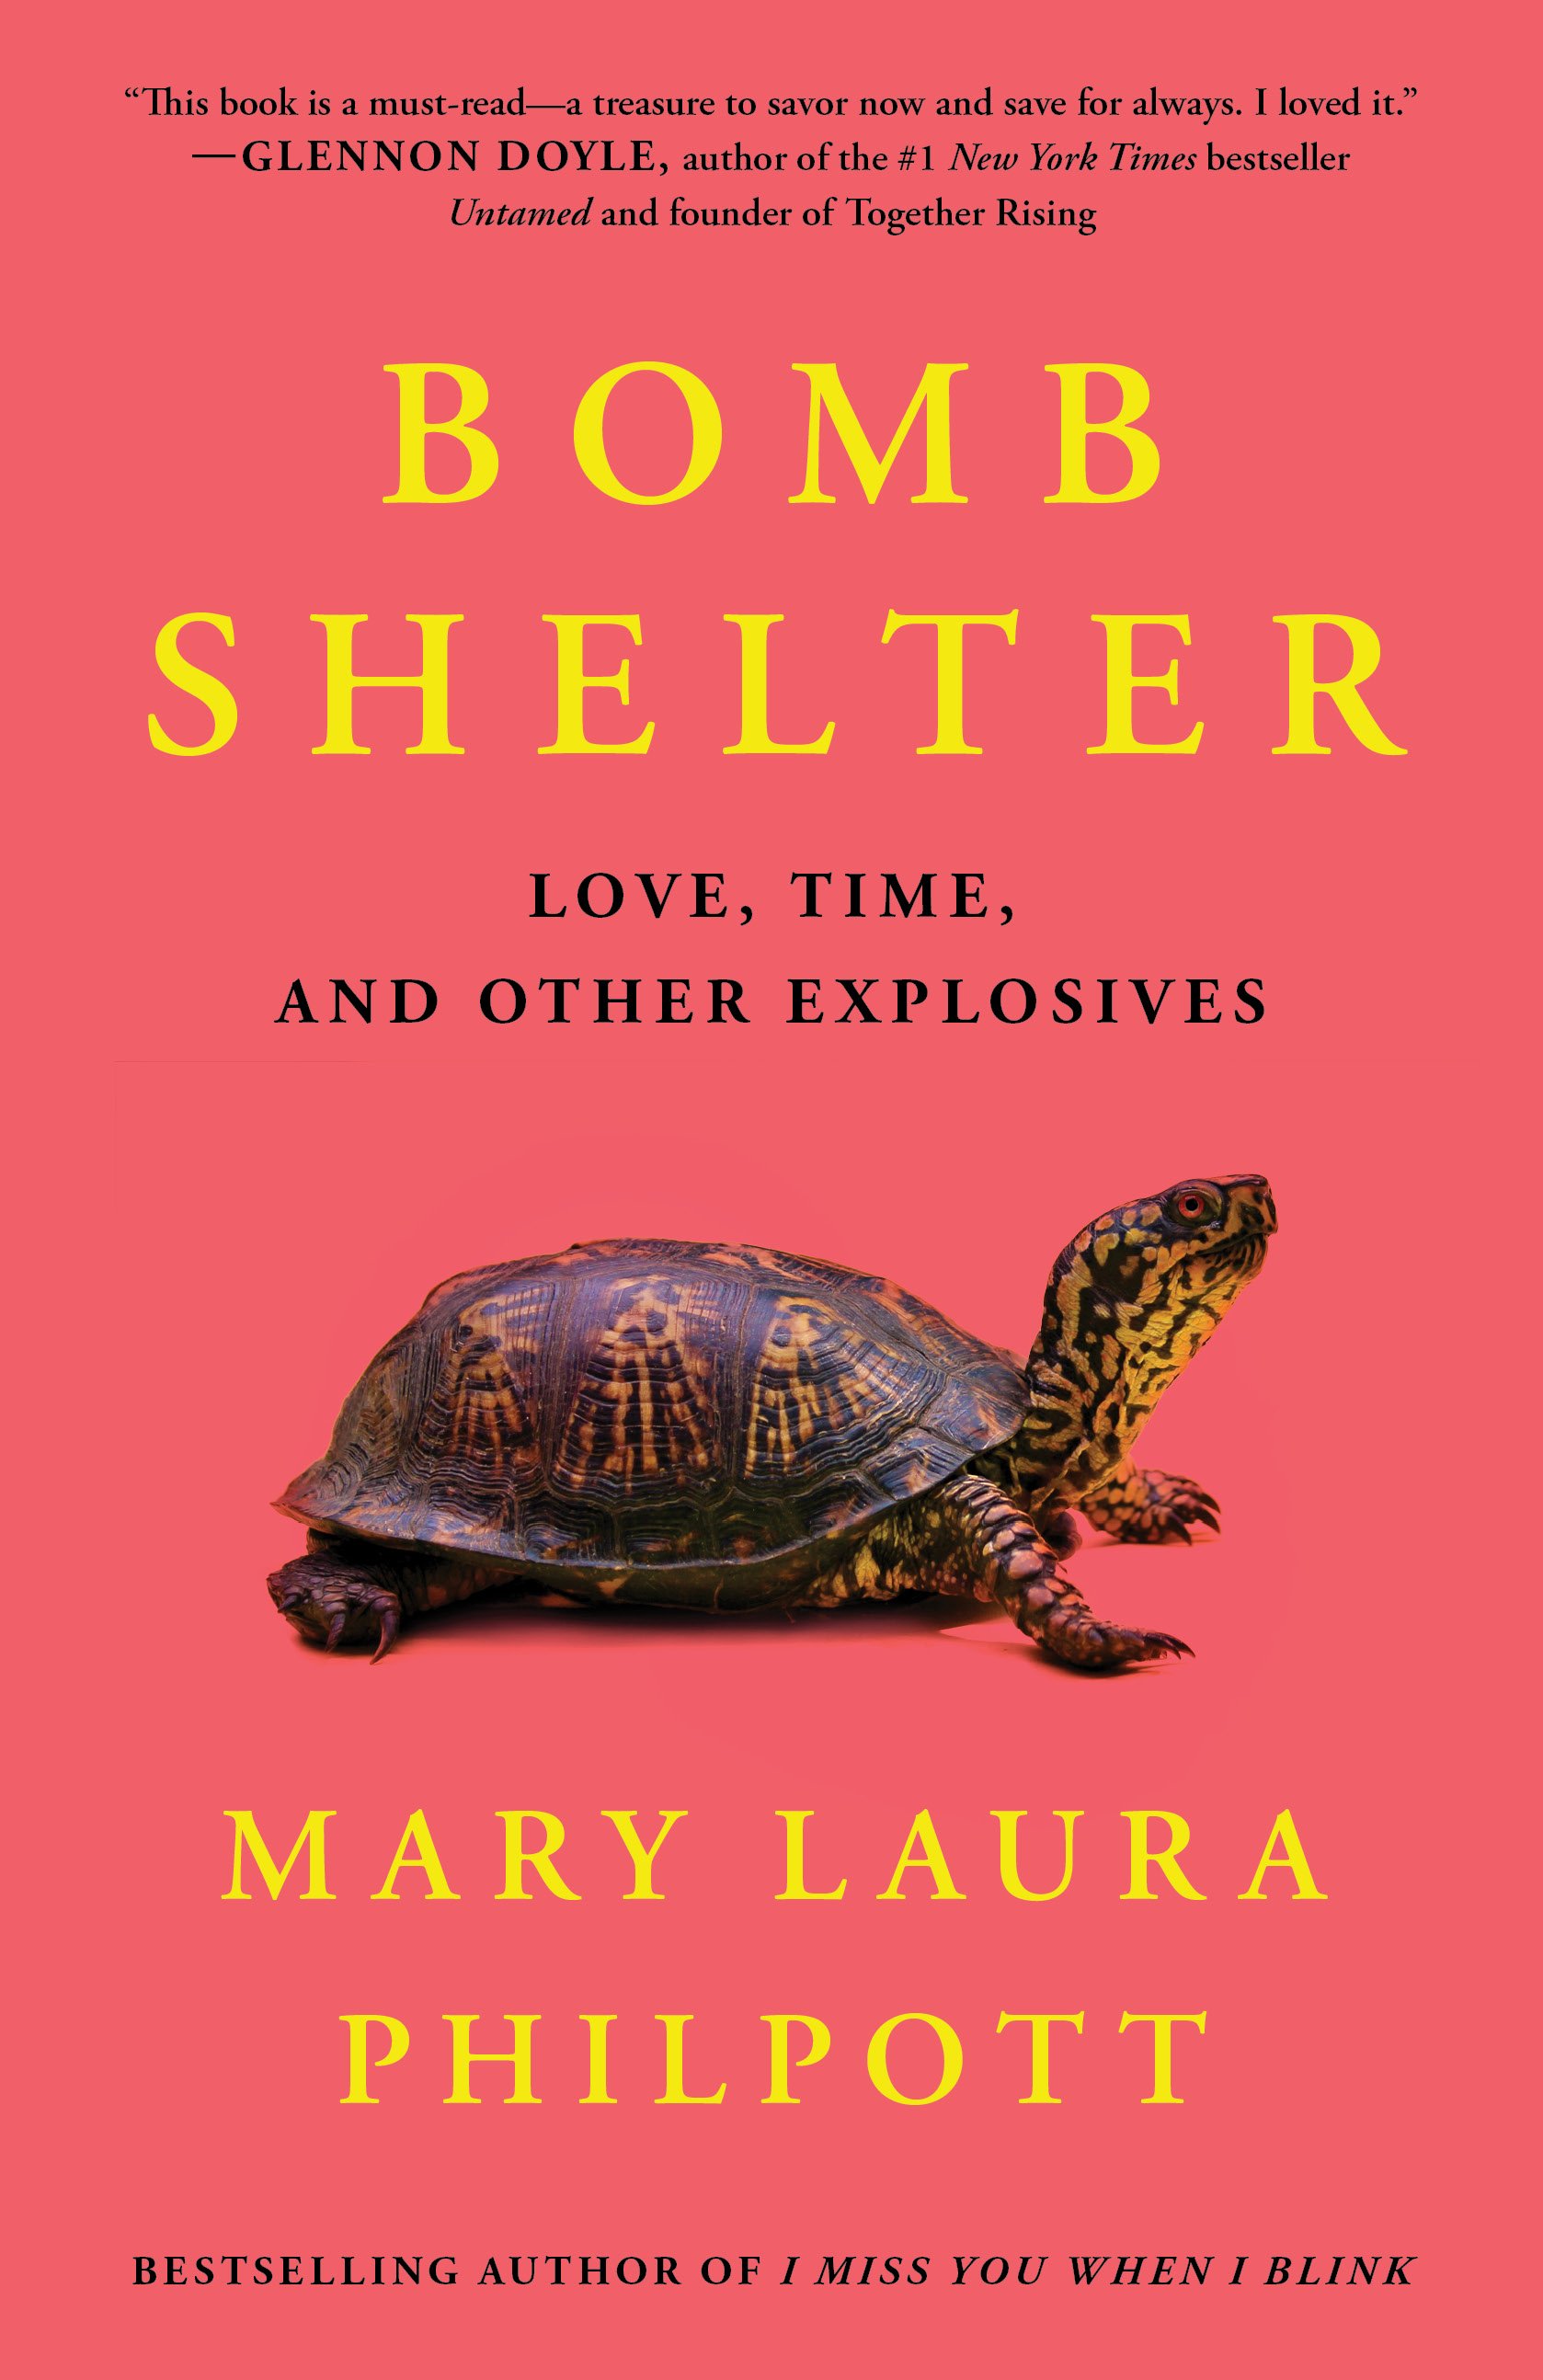 BOMB SHELTER COVER NEW.jpg